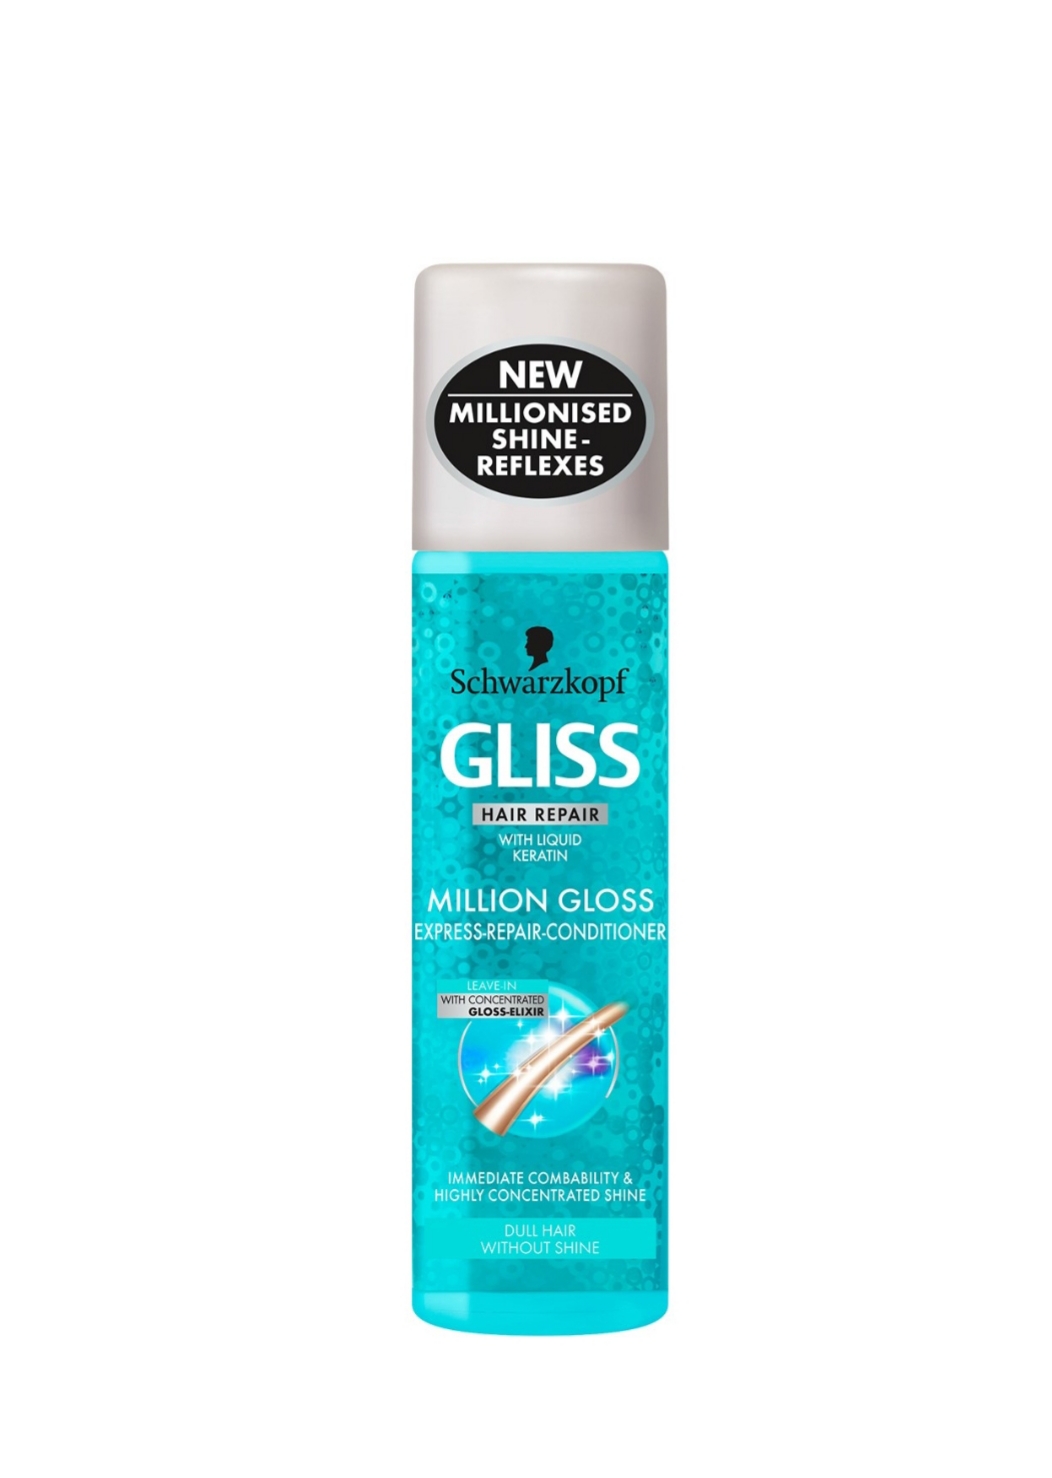 فراورده های حالت دهنده ،نرم کننده وتثبیت کننده آرایش مو (کرمها ، لوسیونها وروغنها) GLISS Million Gloss express repair conditioner packaging 01